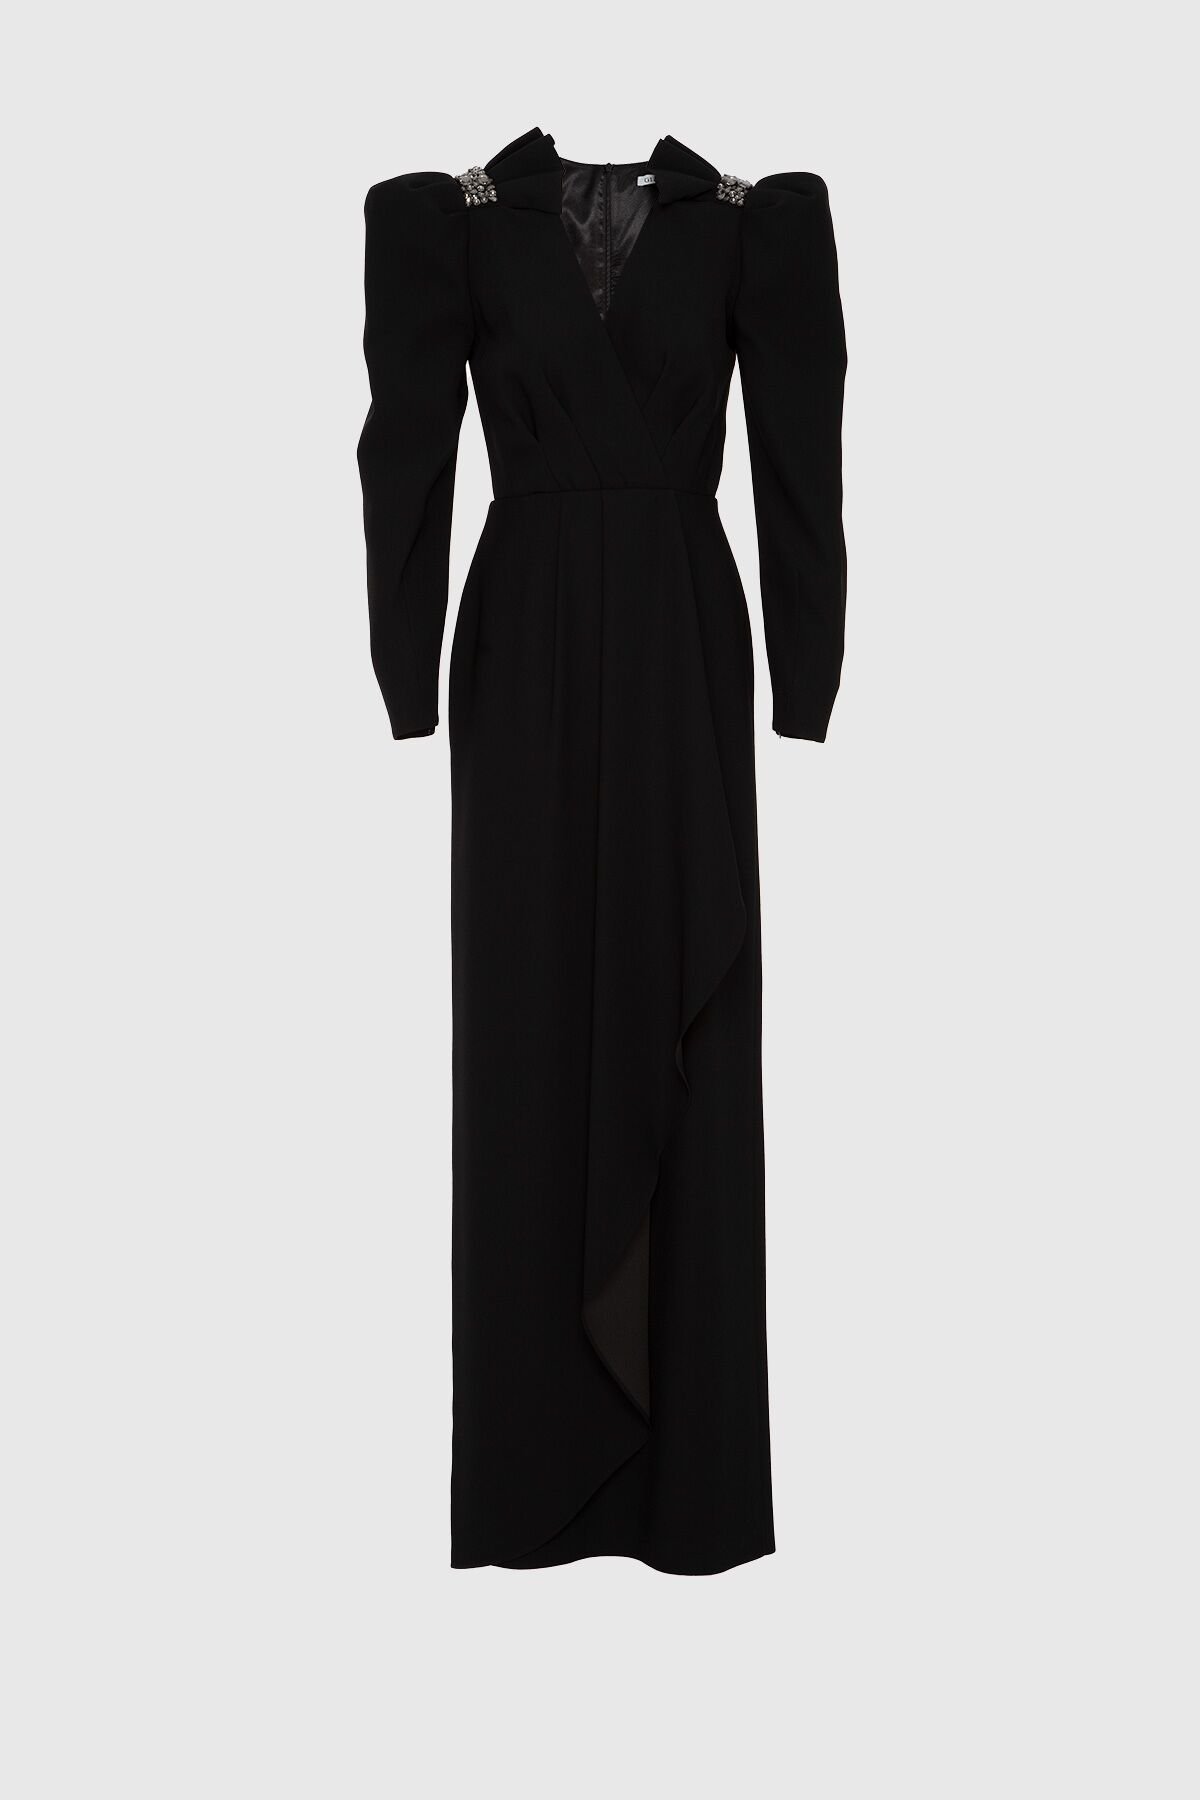 Embroidered Detailed V Neck Long Black Evening Dress